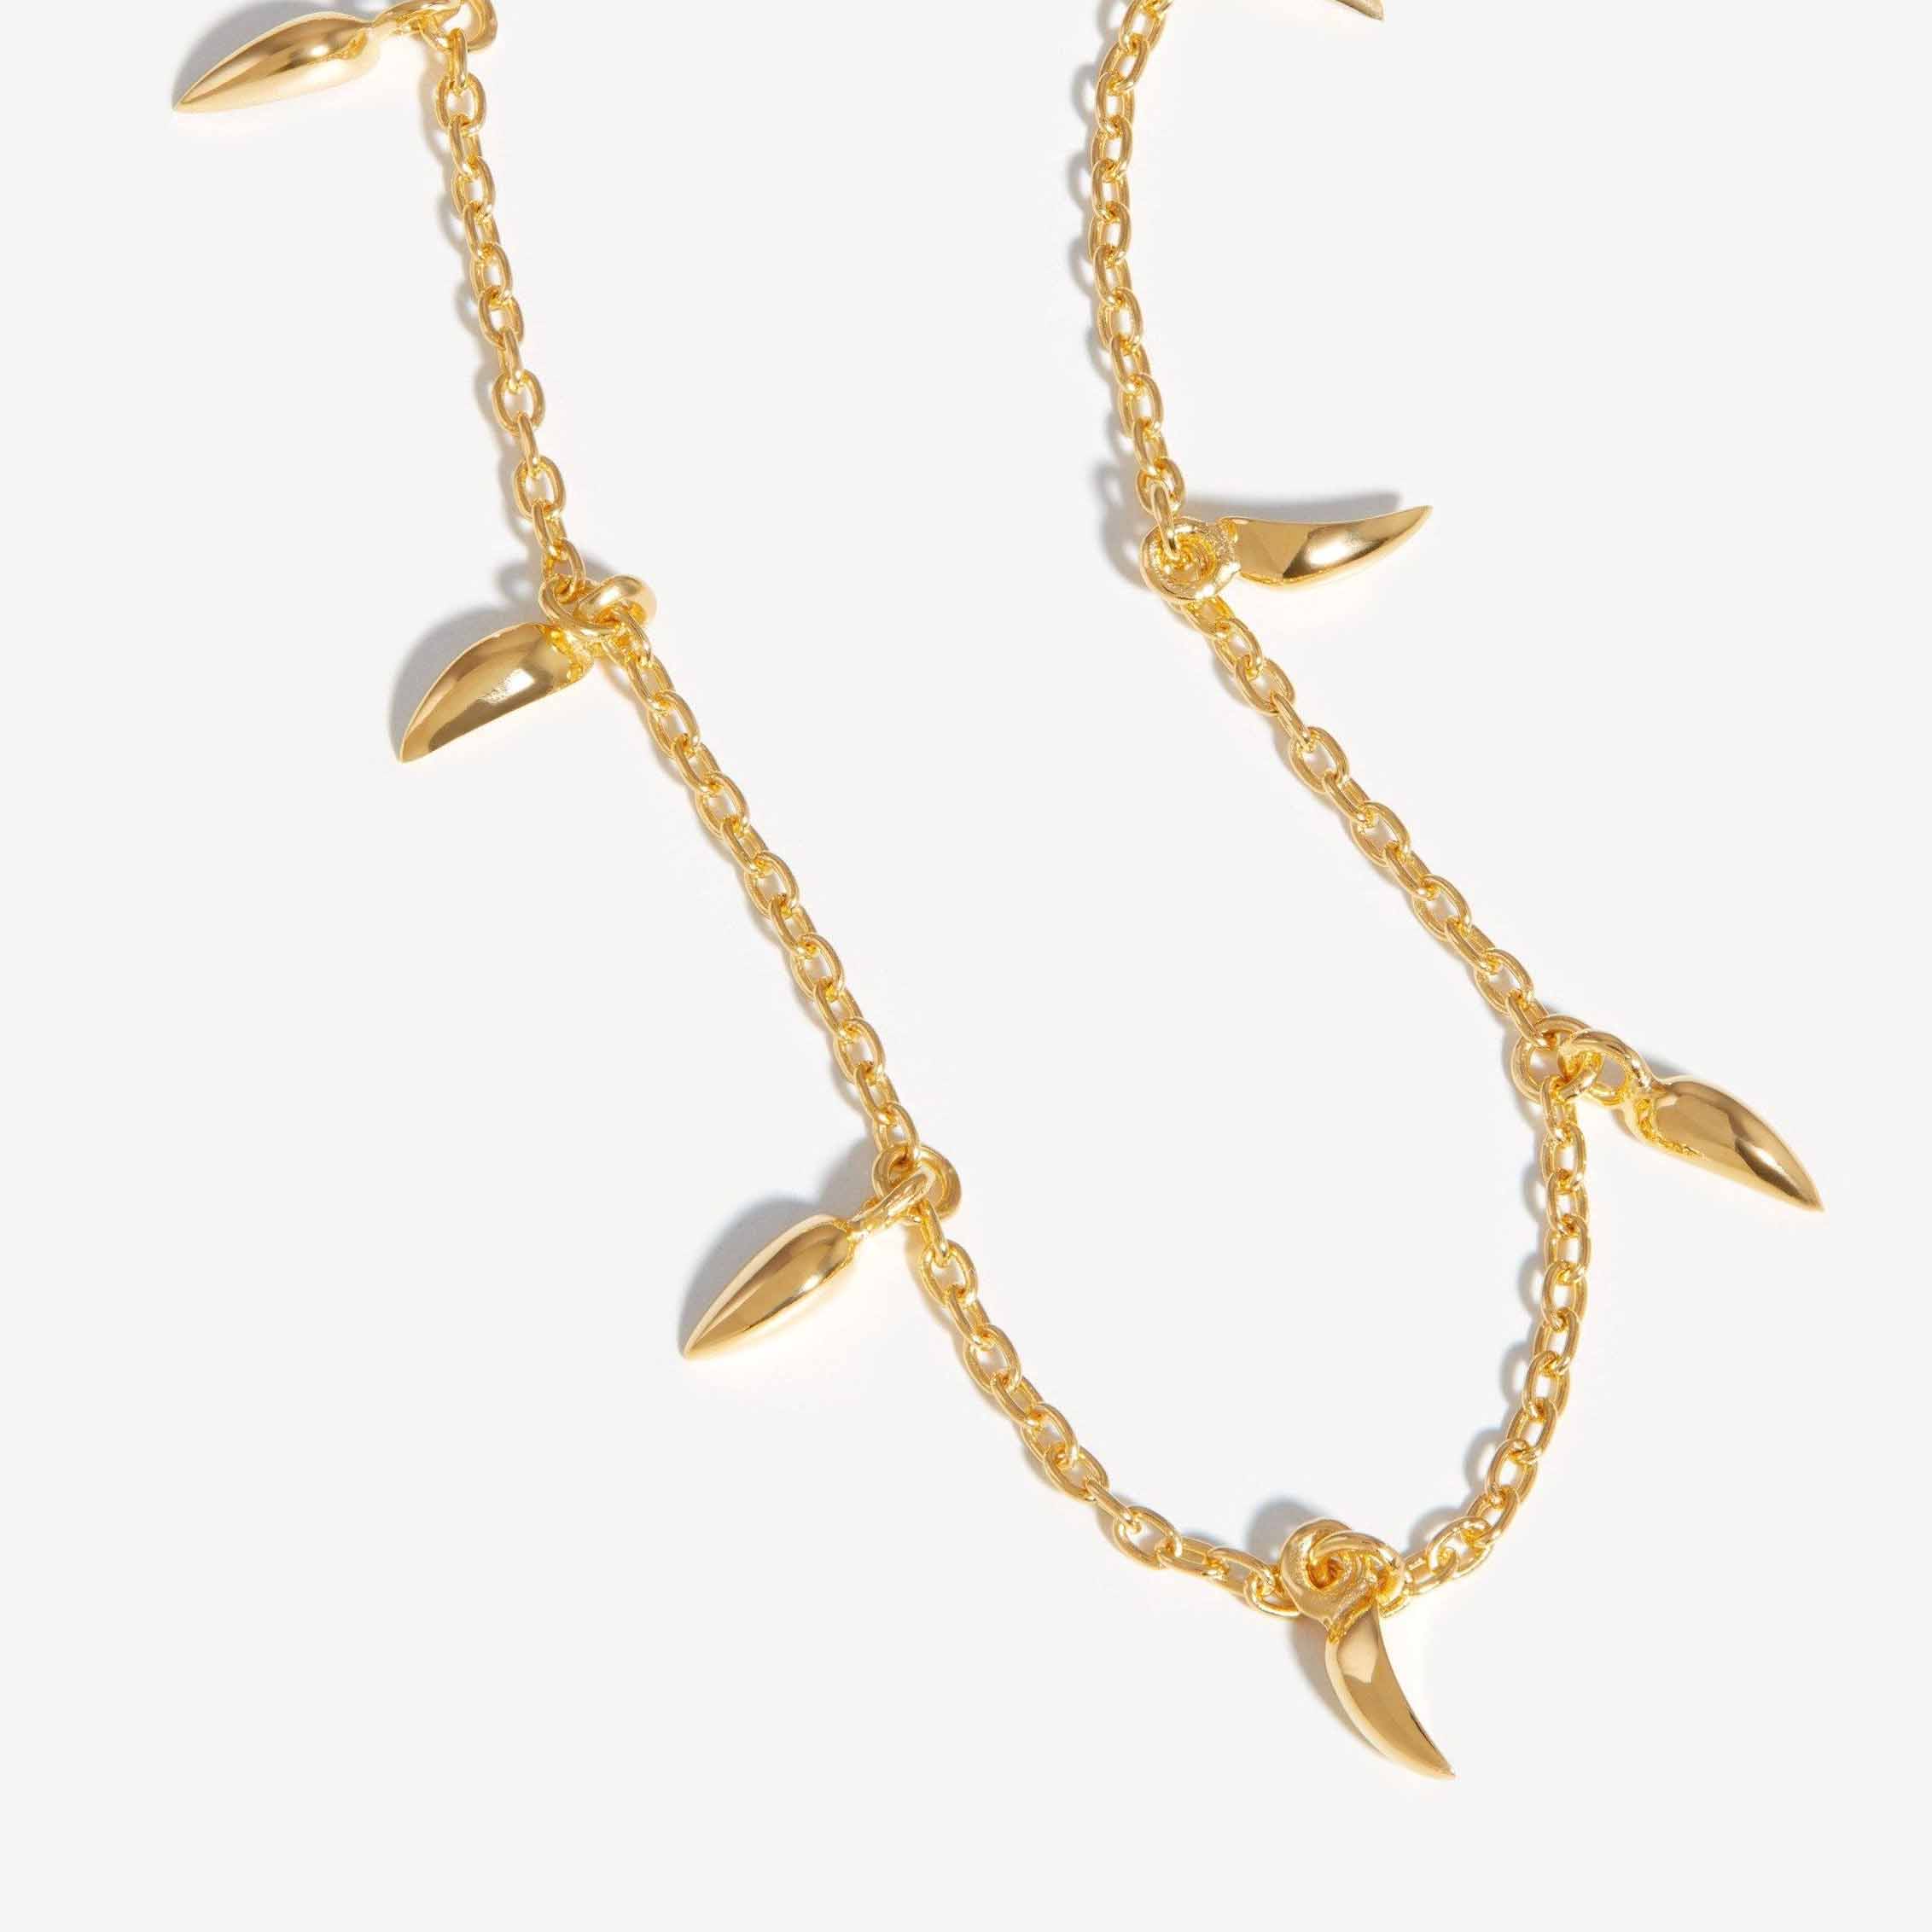 Wykonane na zamówienie naszyjniki typu choker z mini kłami, pokryte 18-karatowym złotem, pozwalają stworzyć własny projekt biżuterii